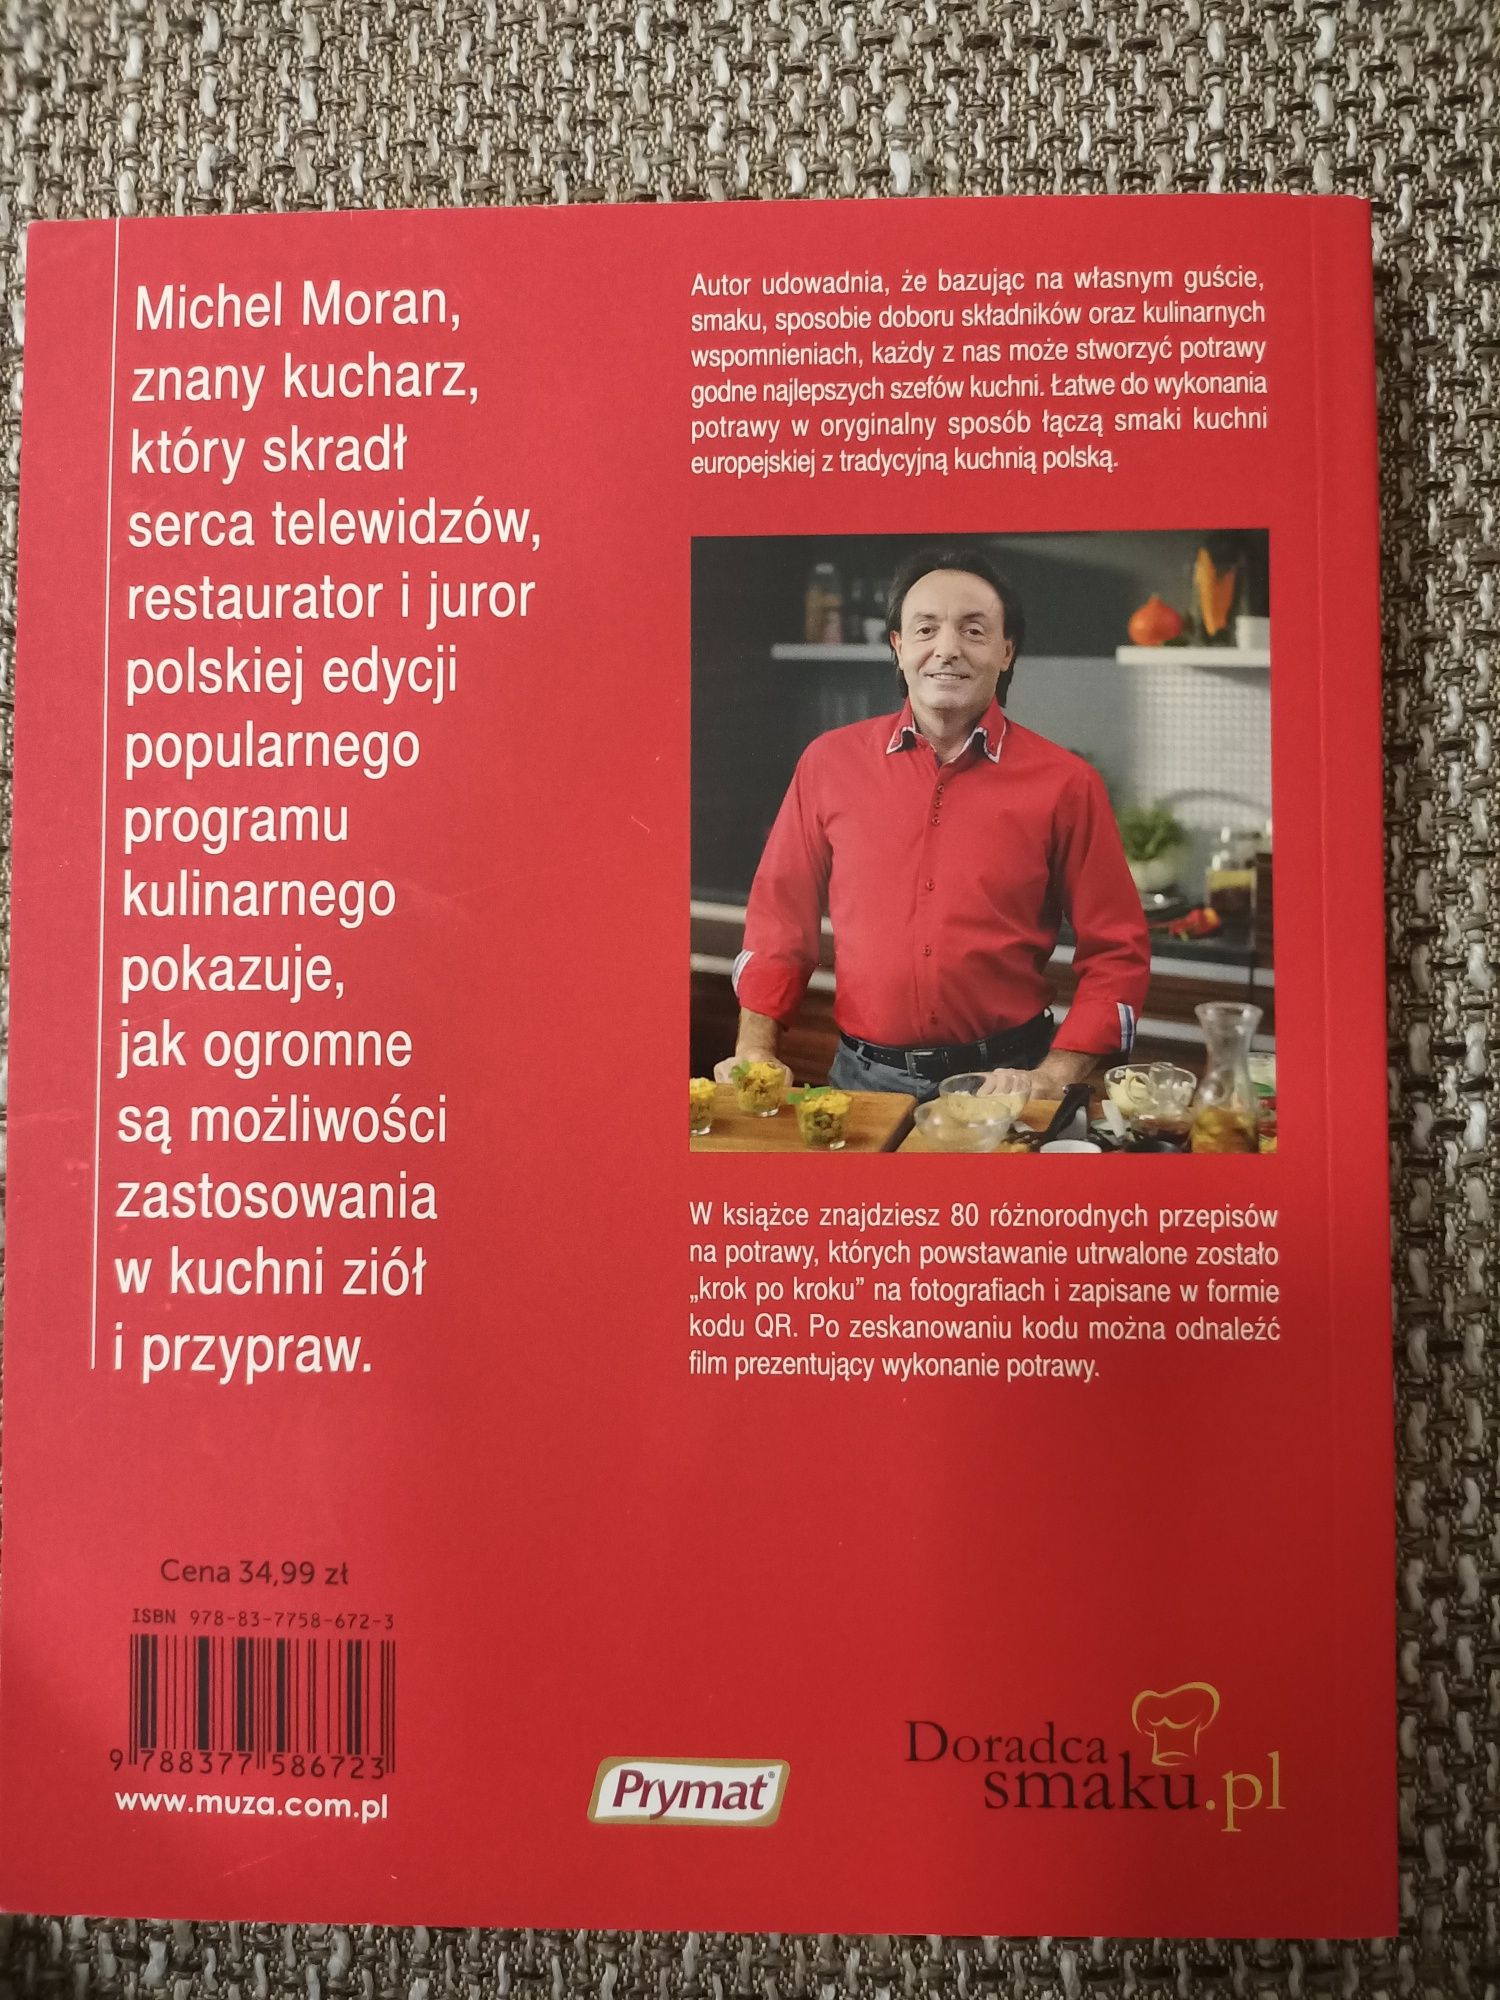 Książka kucharska DORADCA SMAKU.